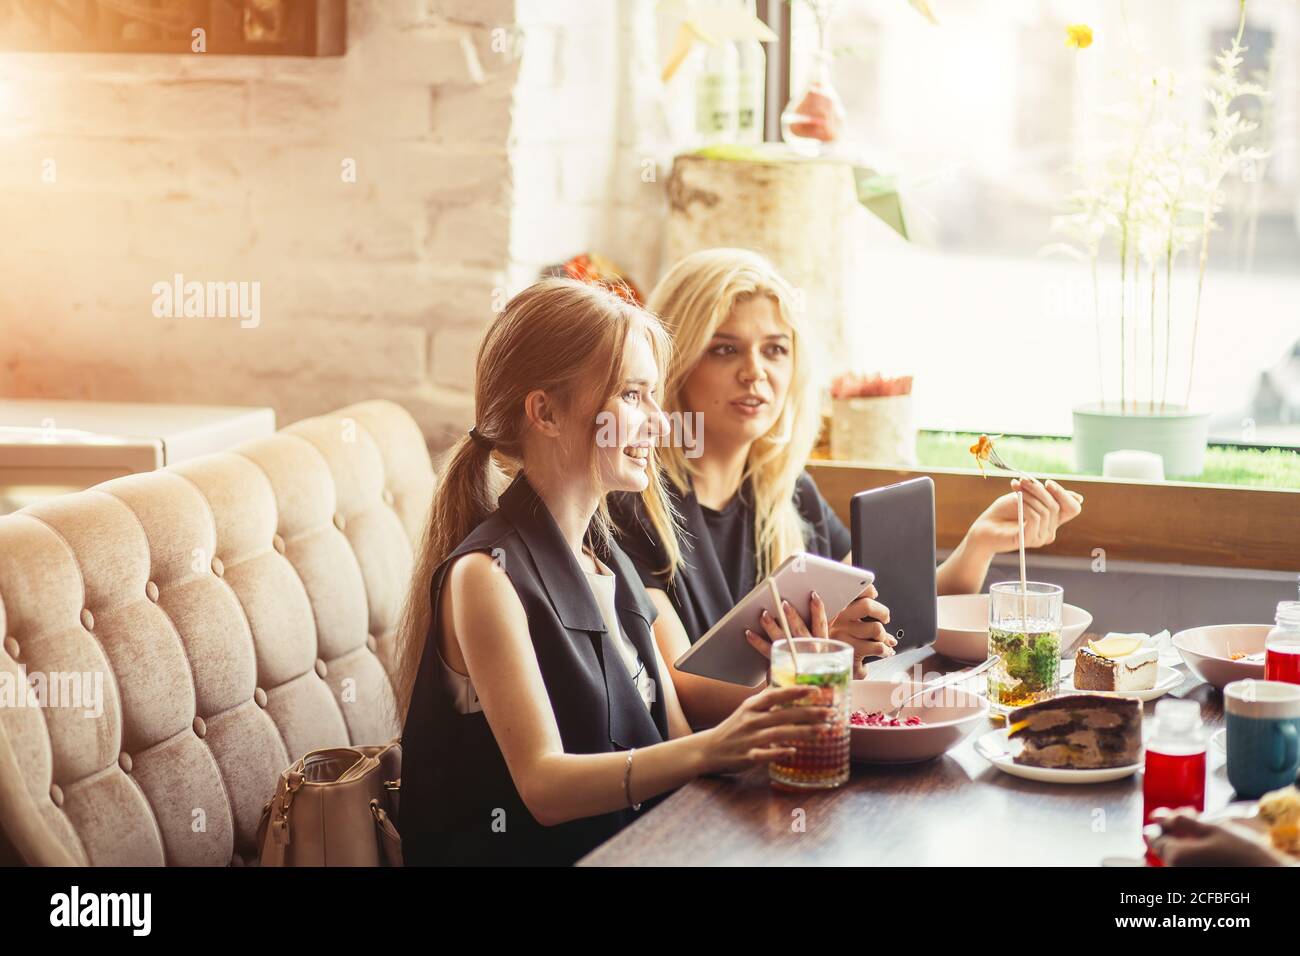 Gli uomini d'affari mangiano, parlano e sorridono mentre pranzano in un caffè Foto Stock